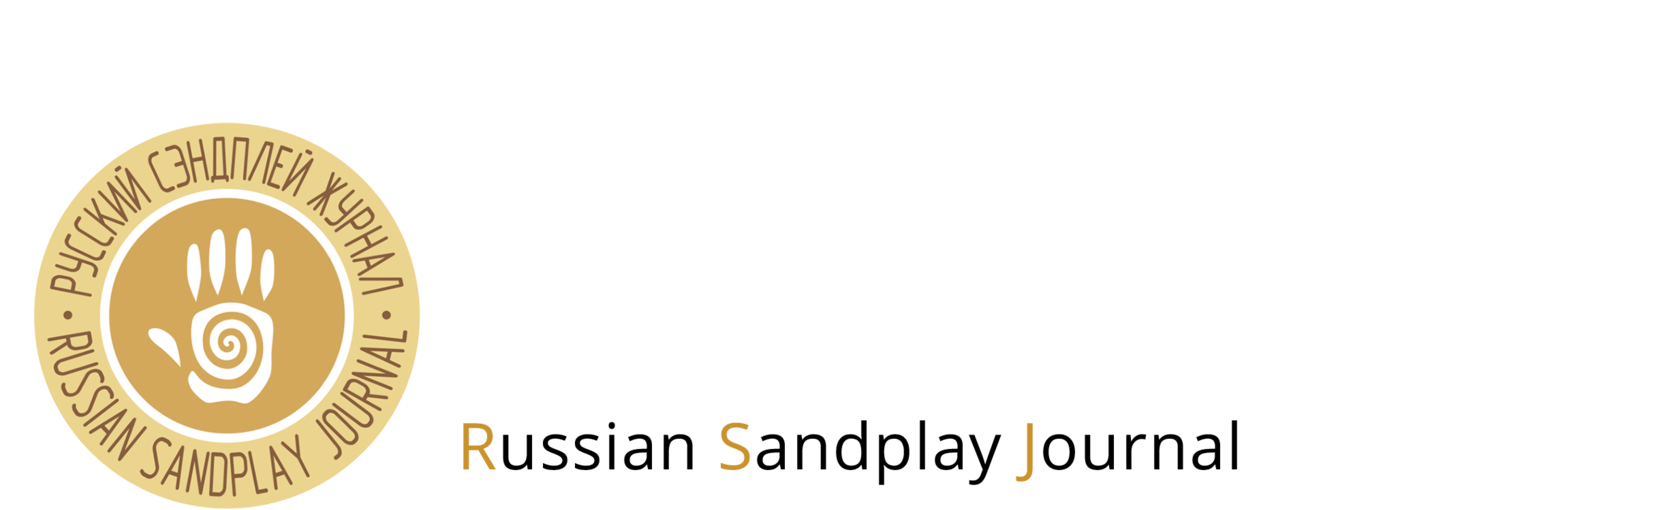  ﻿ Русский Сэндплей Ж﻿урнал 